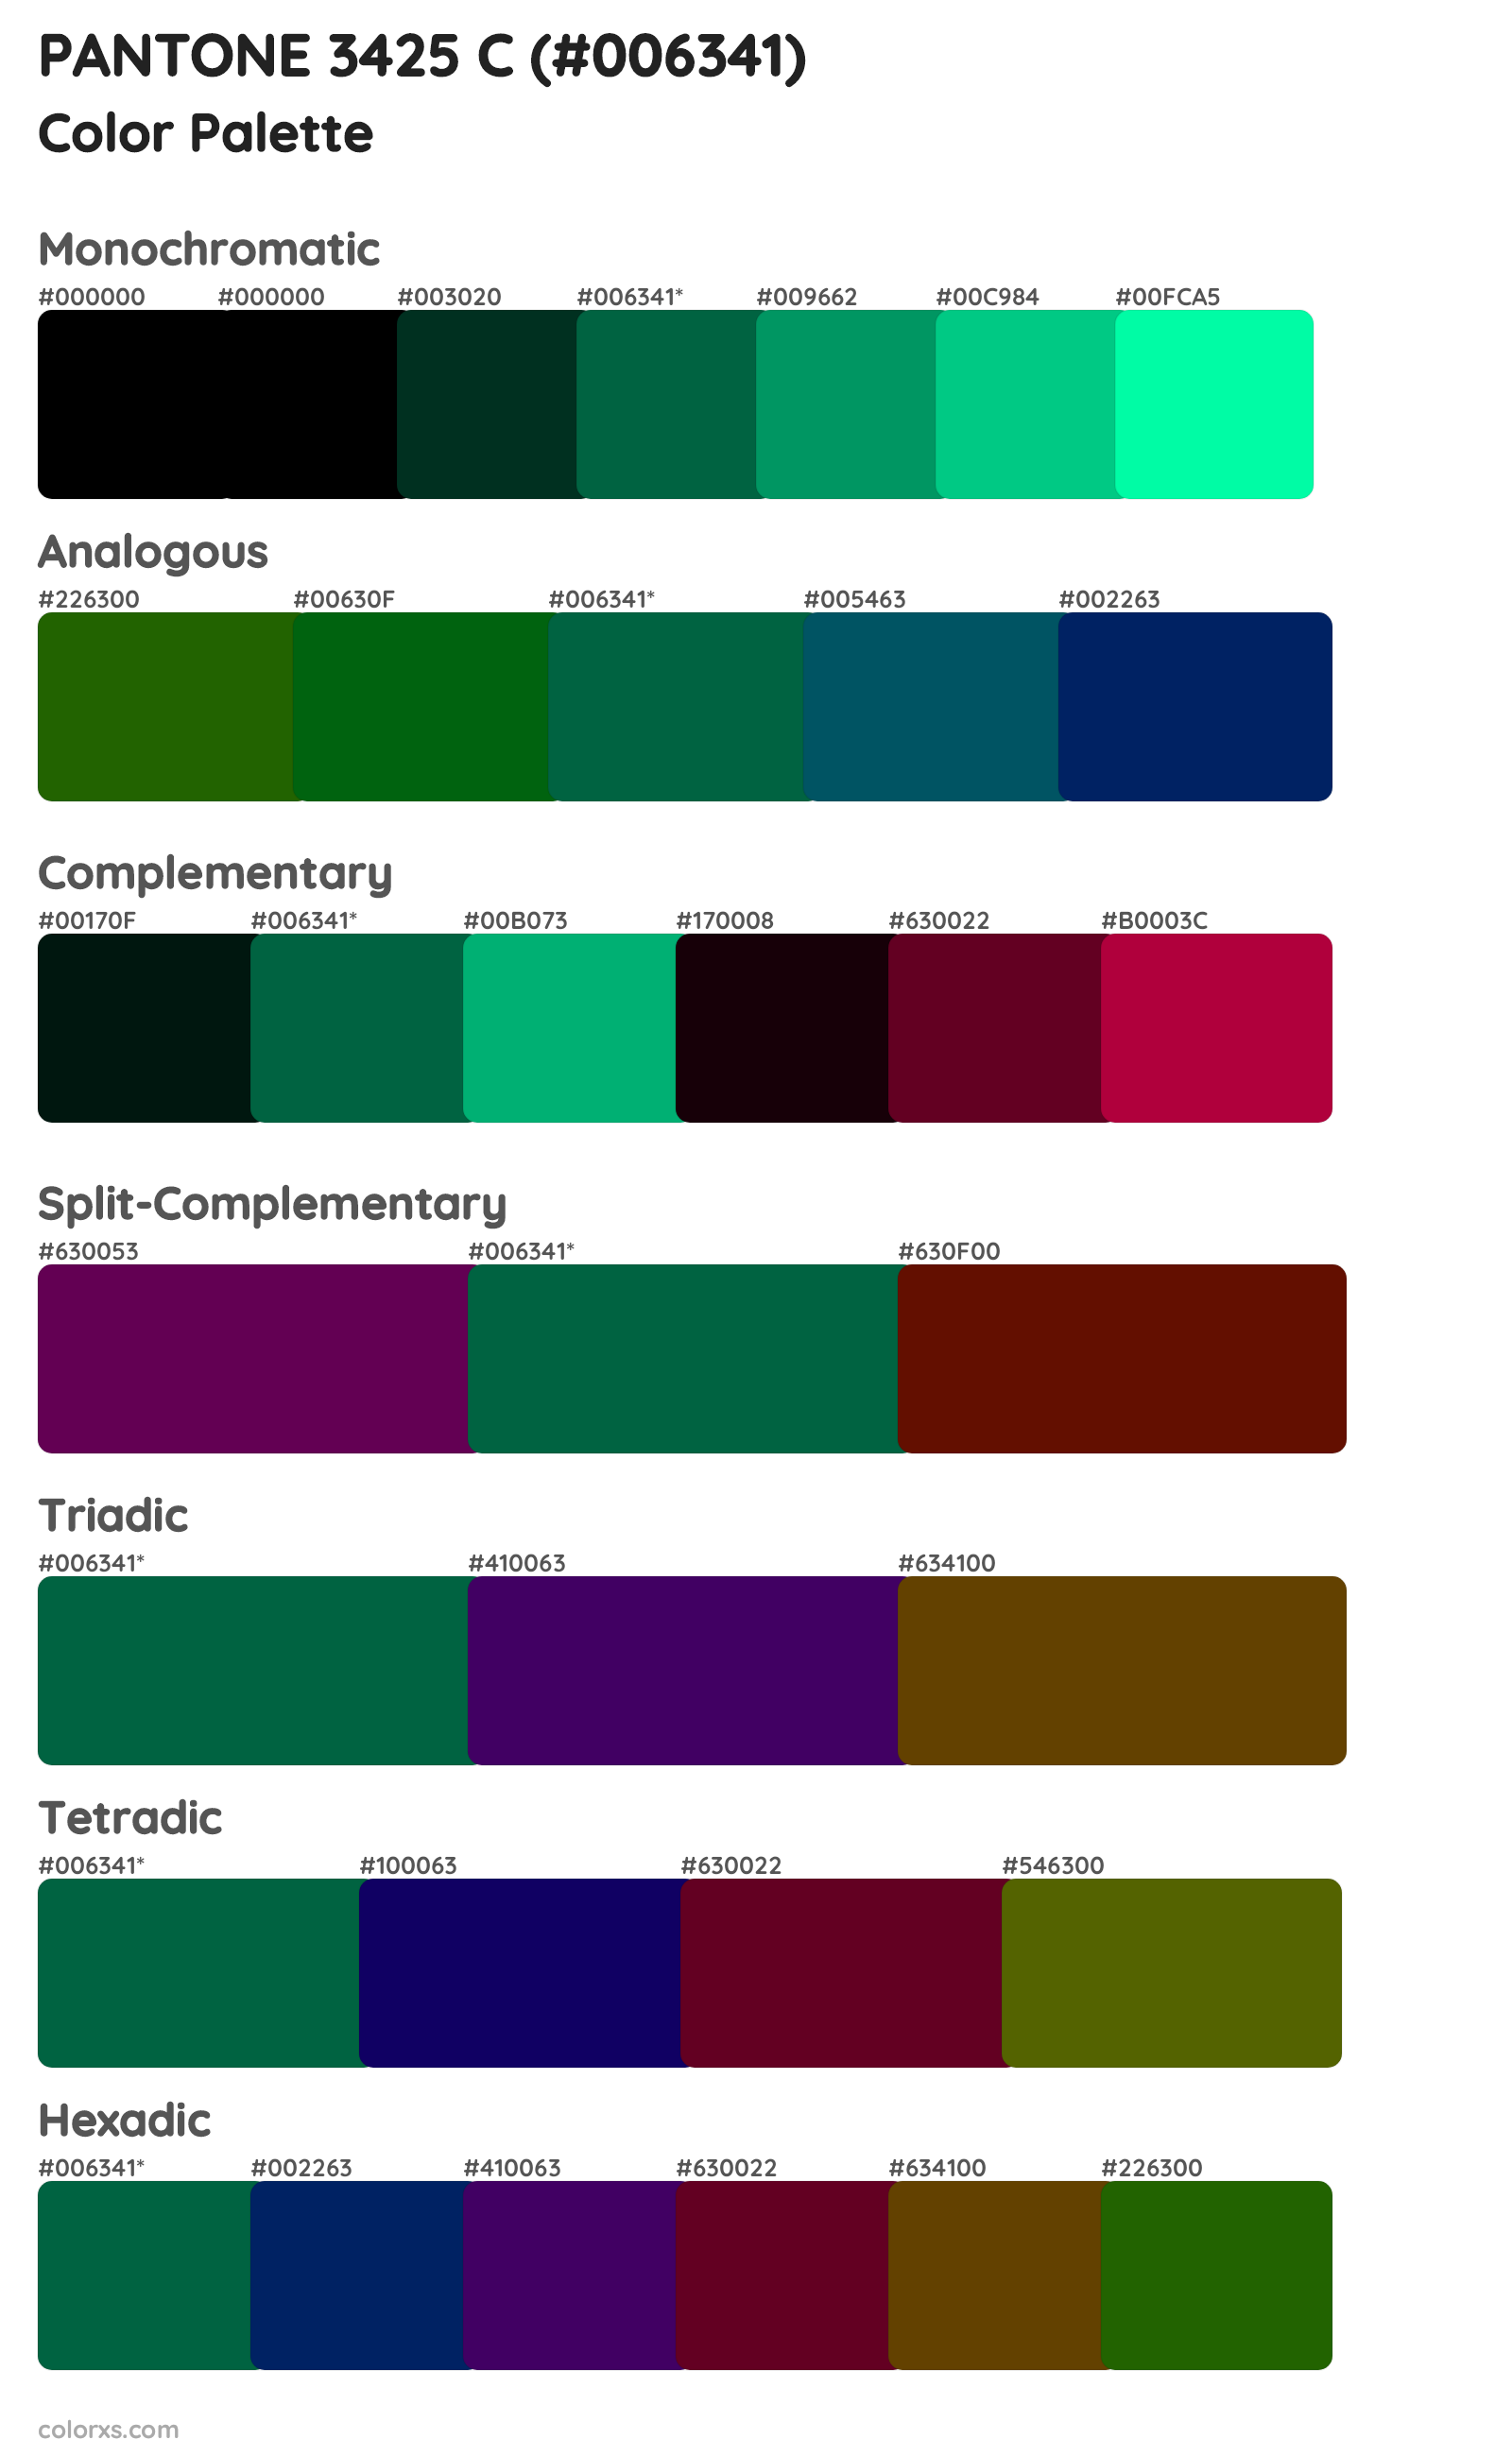 PANTONE 3425 C Color Scheme Palettes